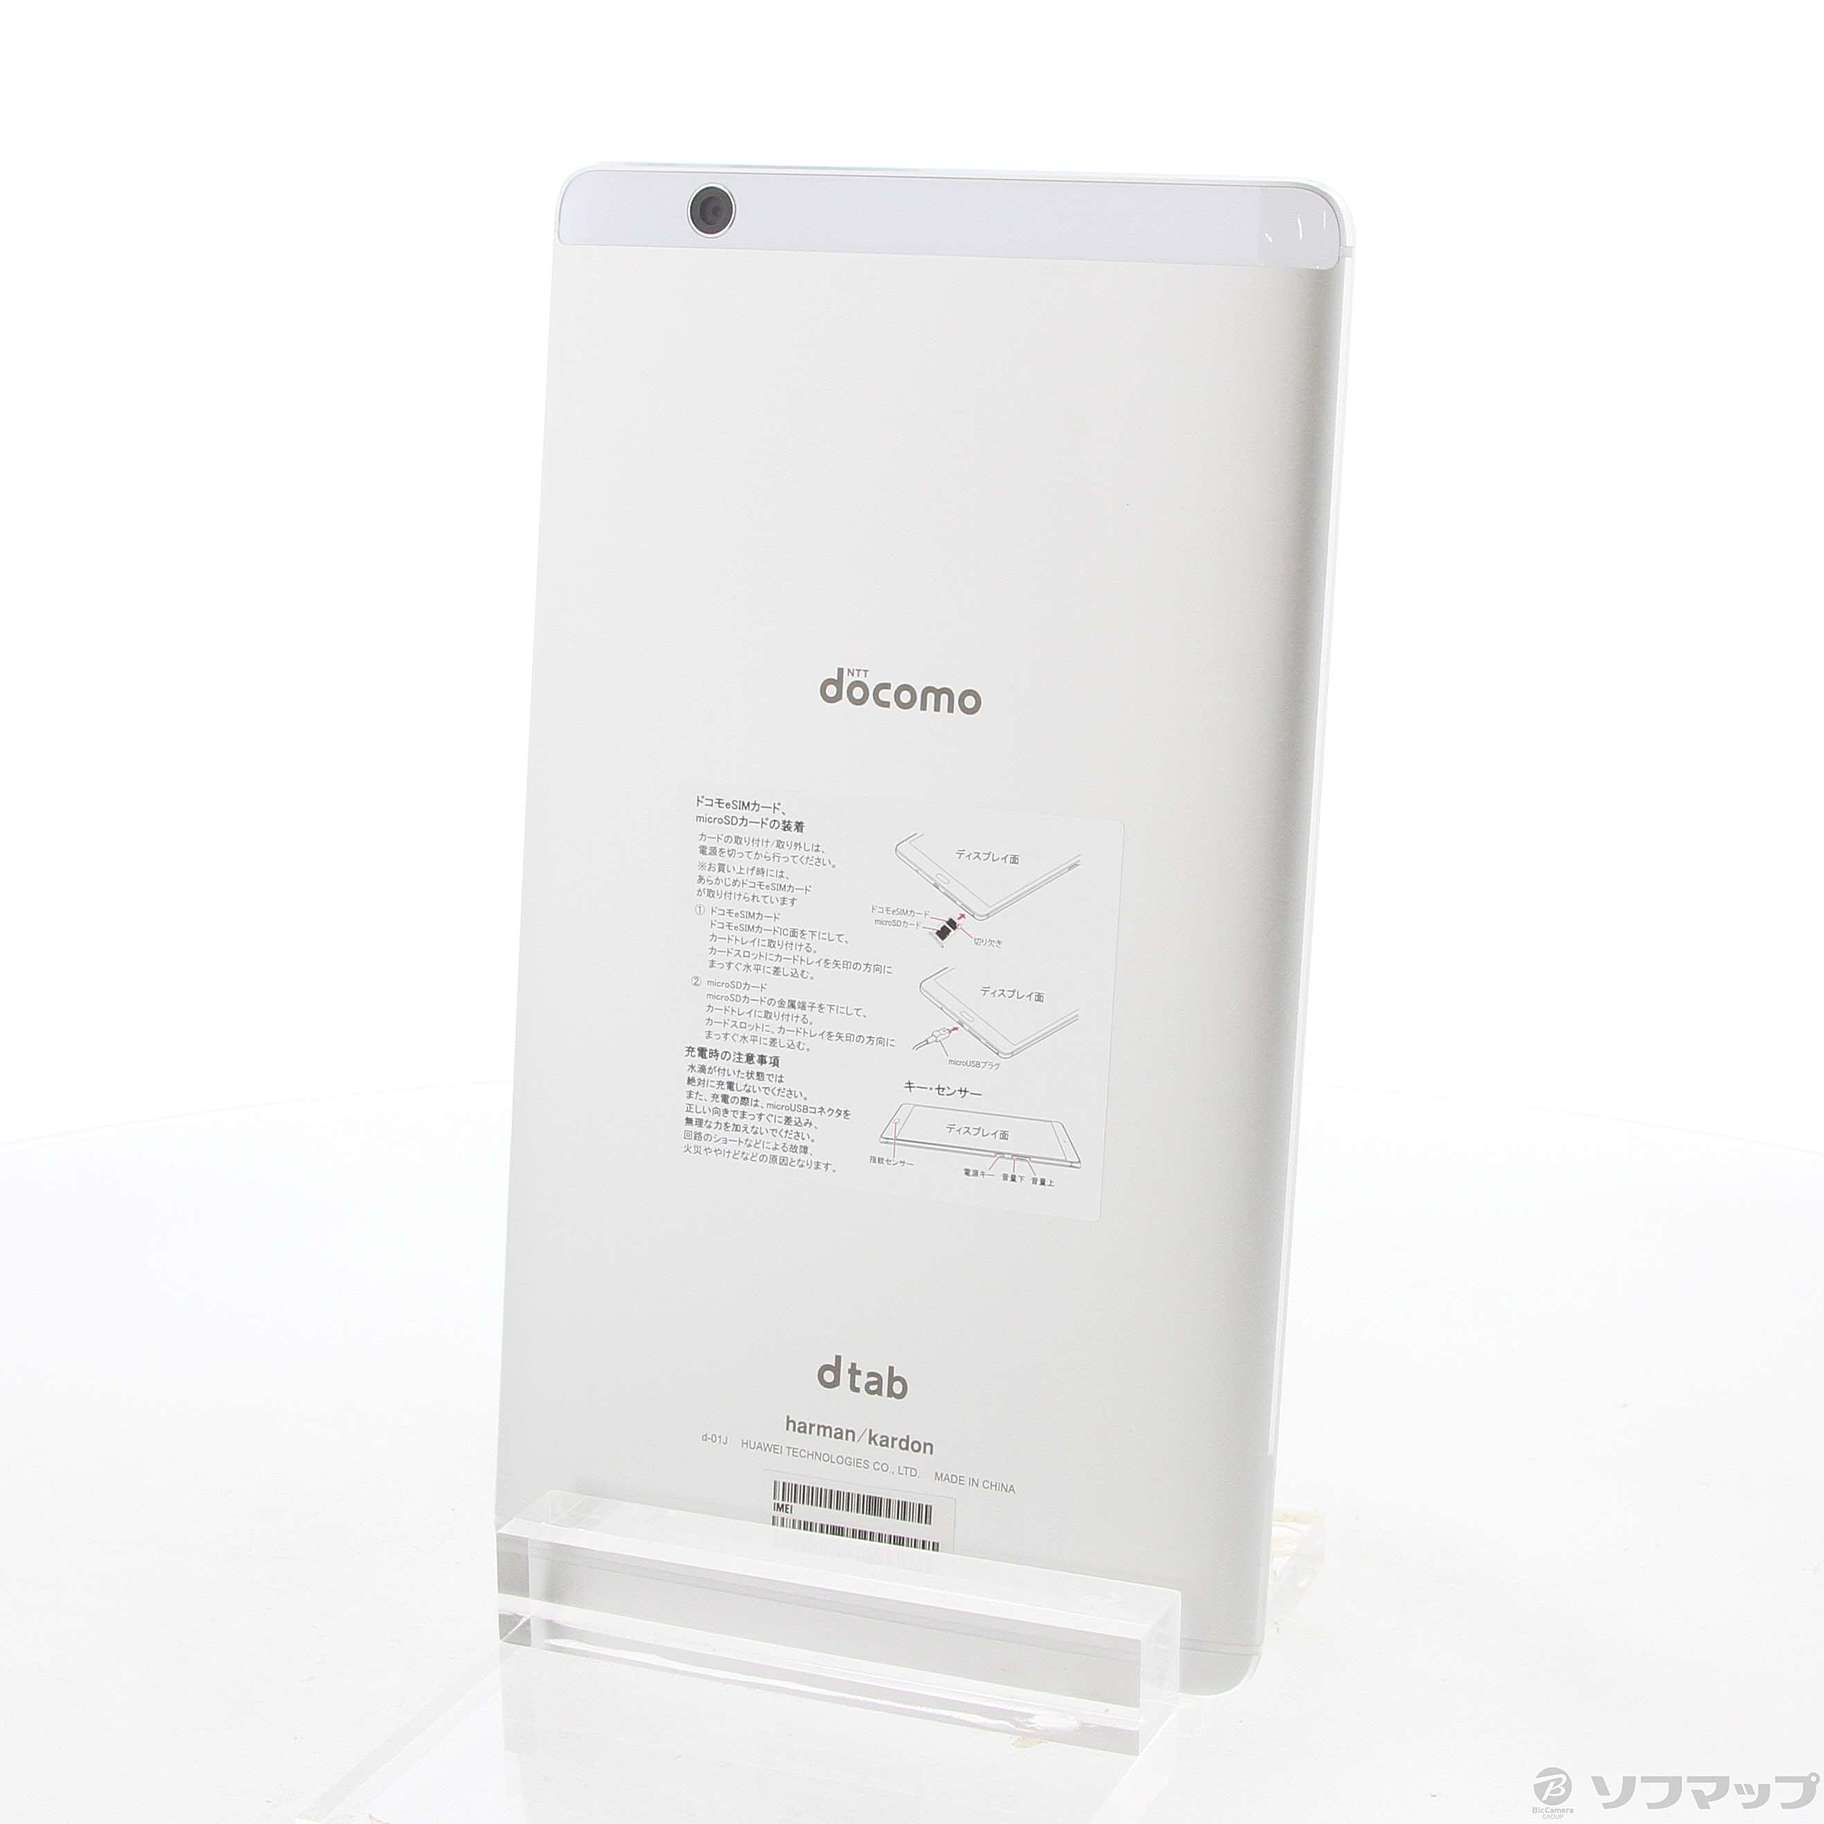 【付属あり】Huawei dtab Compact d-01J Silverタブレット